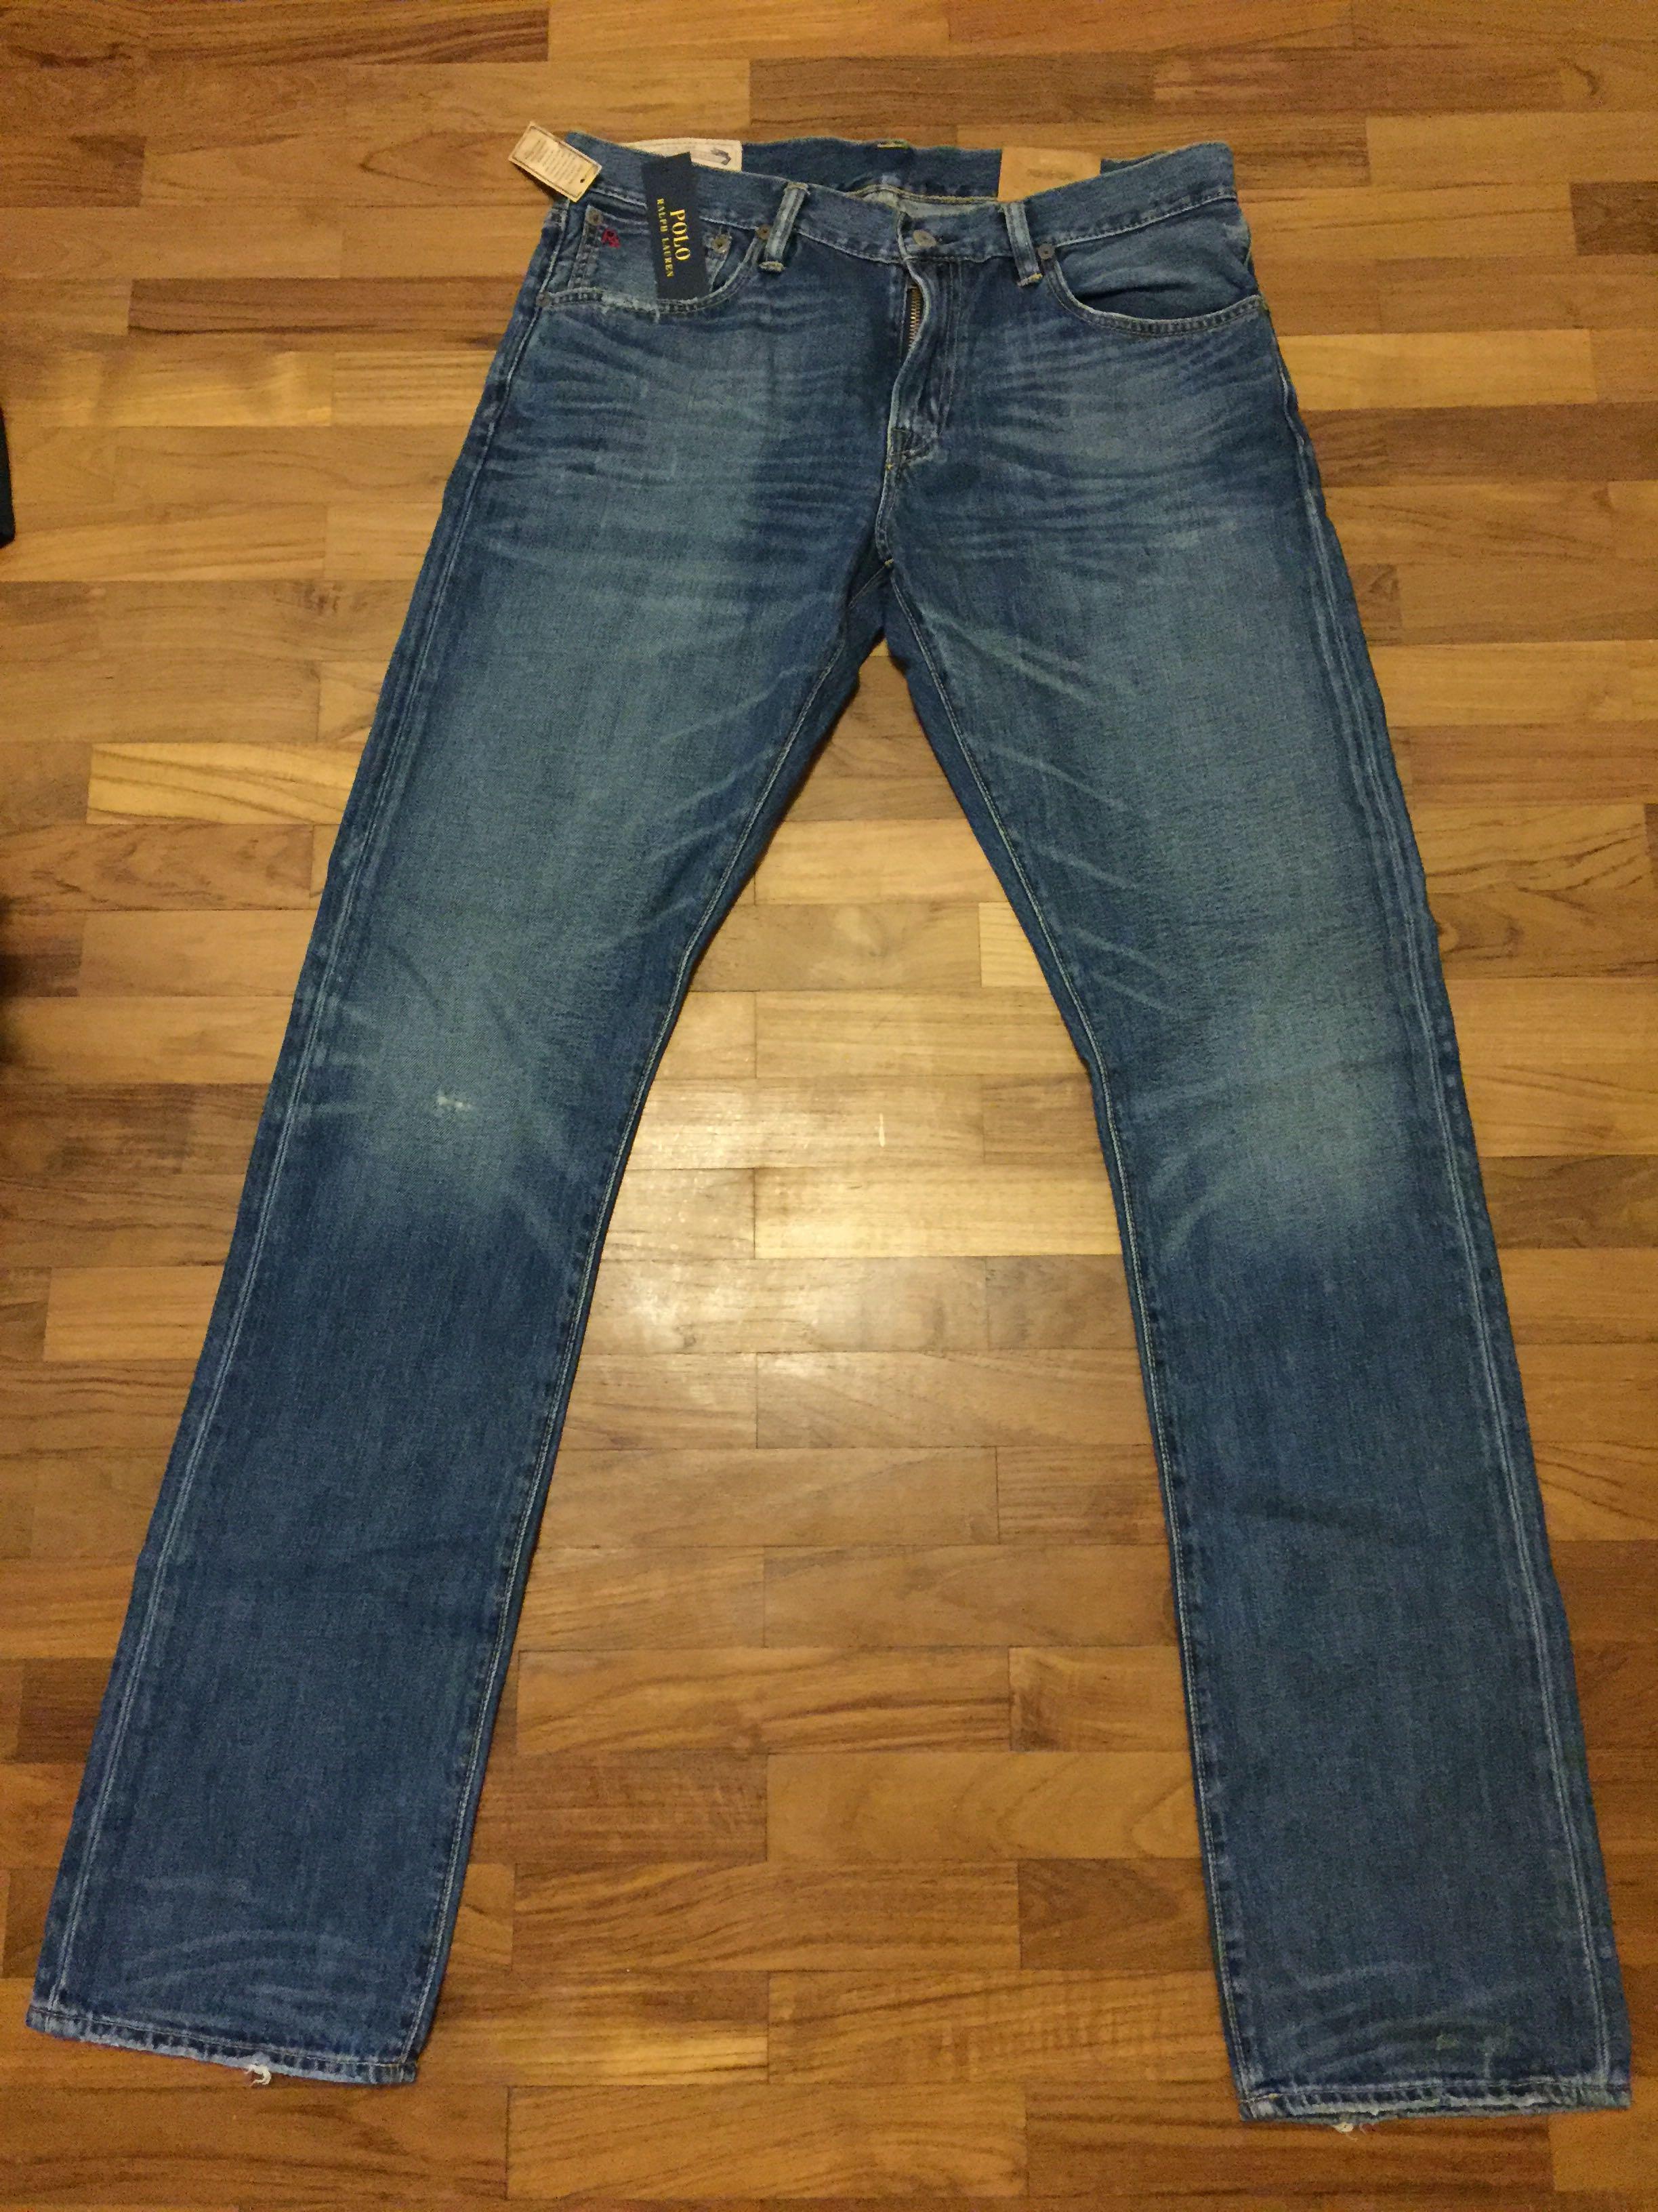 Polo Ralph Lauren Varick Slim Straight Jeans (for Men), Men's Fashion,  Bottoms, Jeans on Carousell